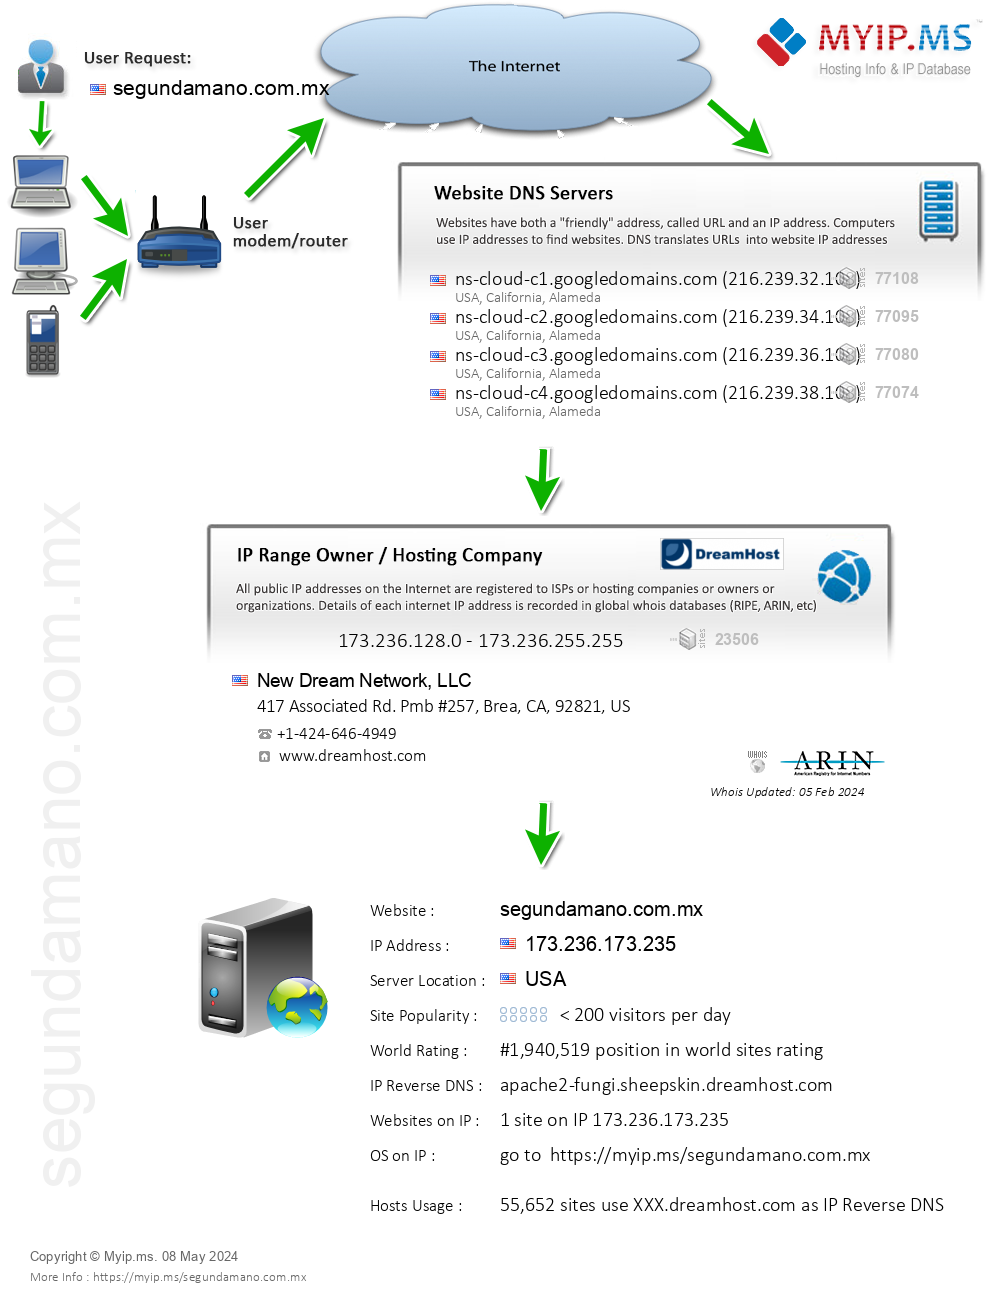 Segundamano.com.mx - Website Hosting Visual IP Diagram